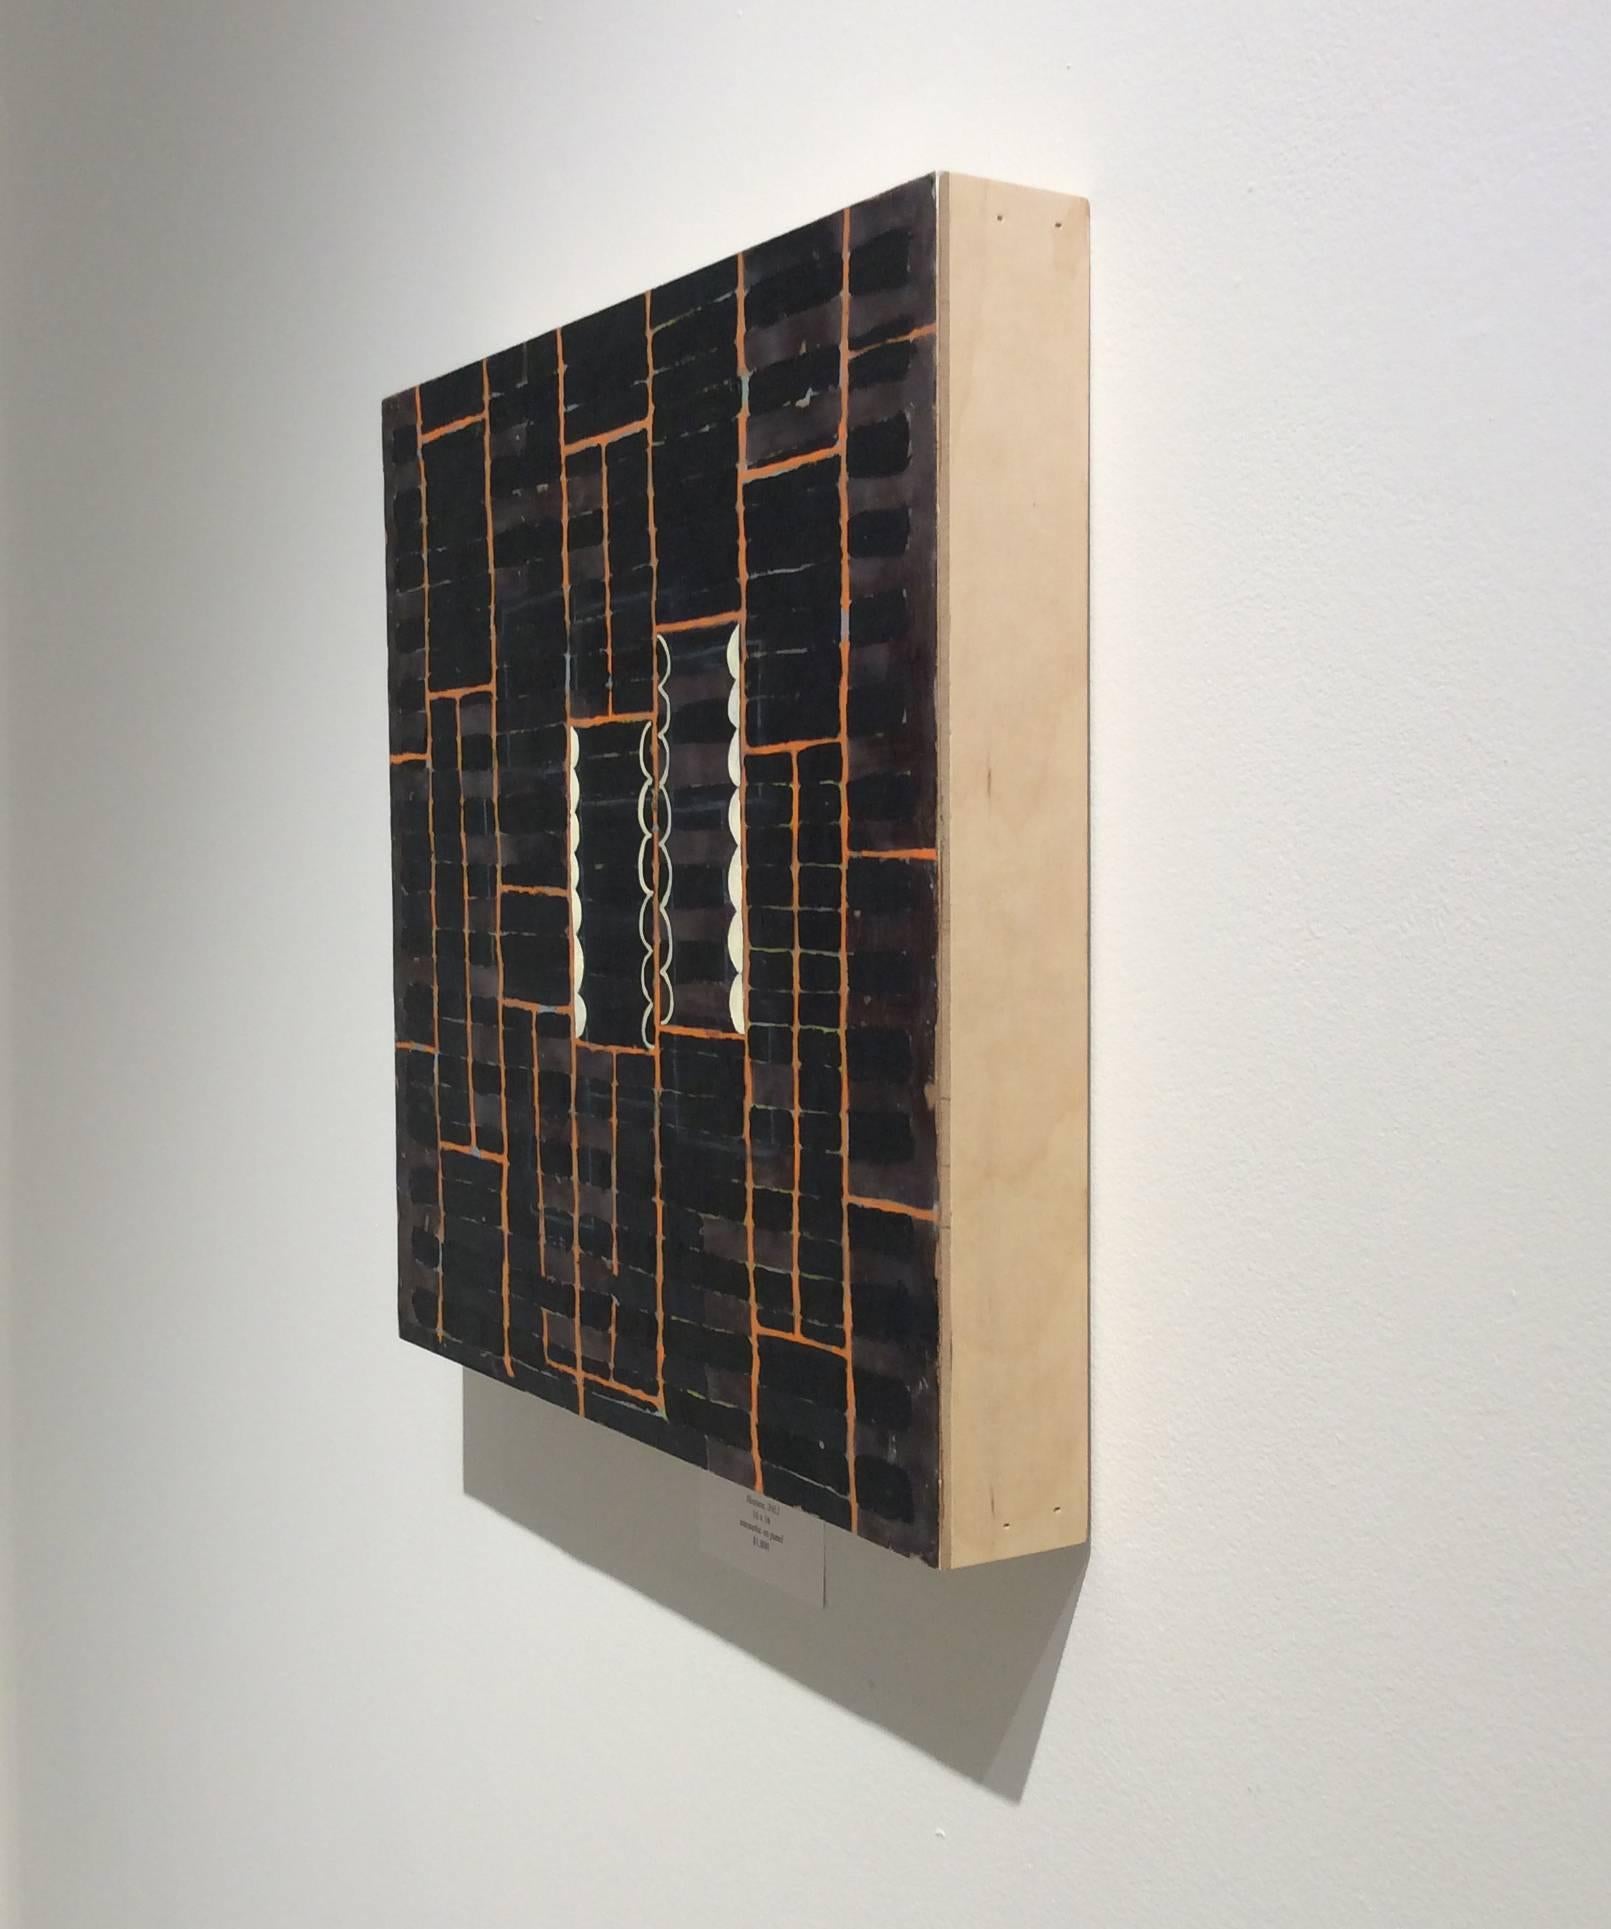 16 x 16 x 2 Zoll
enkaustik auf quadratischer Holzplatte

HOSTESS ist ein abstraktes Gemälde in reicher Enkaustik (pigmentiertes Wachs) auf Holzplatte.  Ein dunkles, kreuzschraffiertes Muster wird von einem leuchtend orangefarbenen Gitter überlagert.